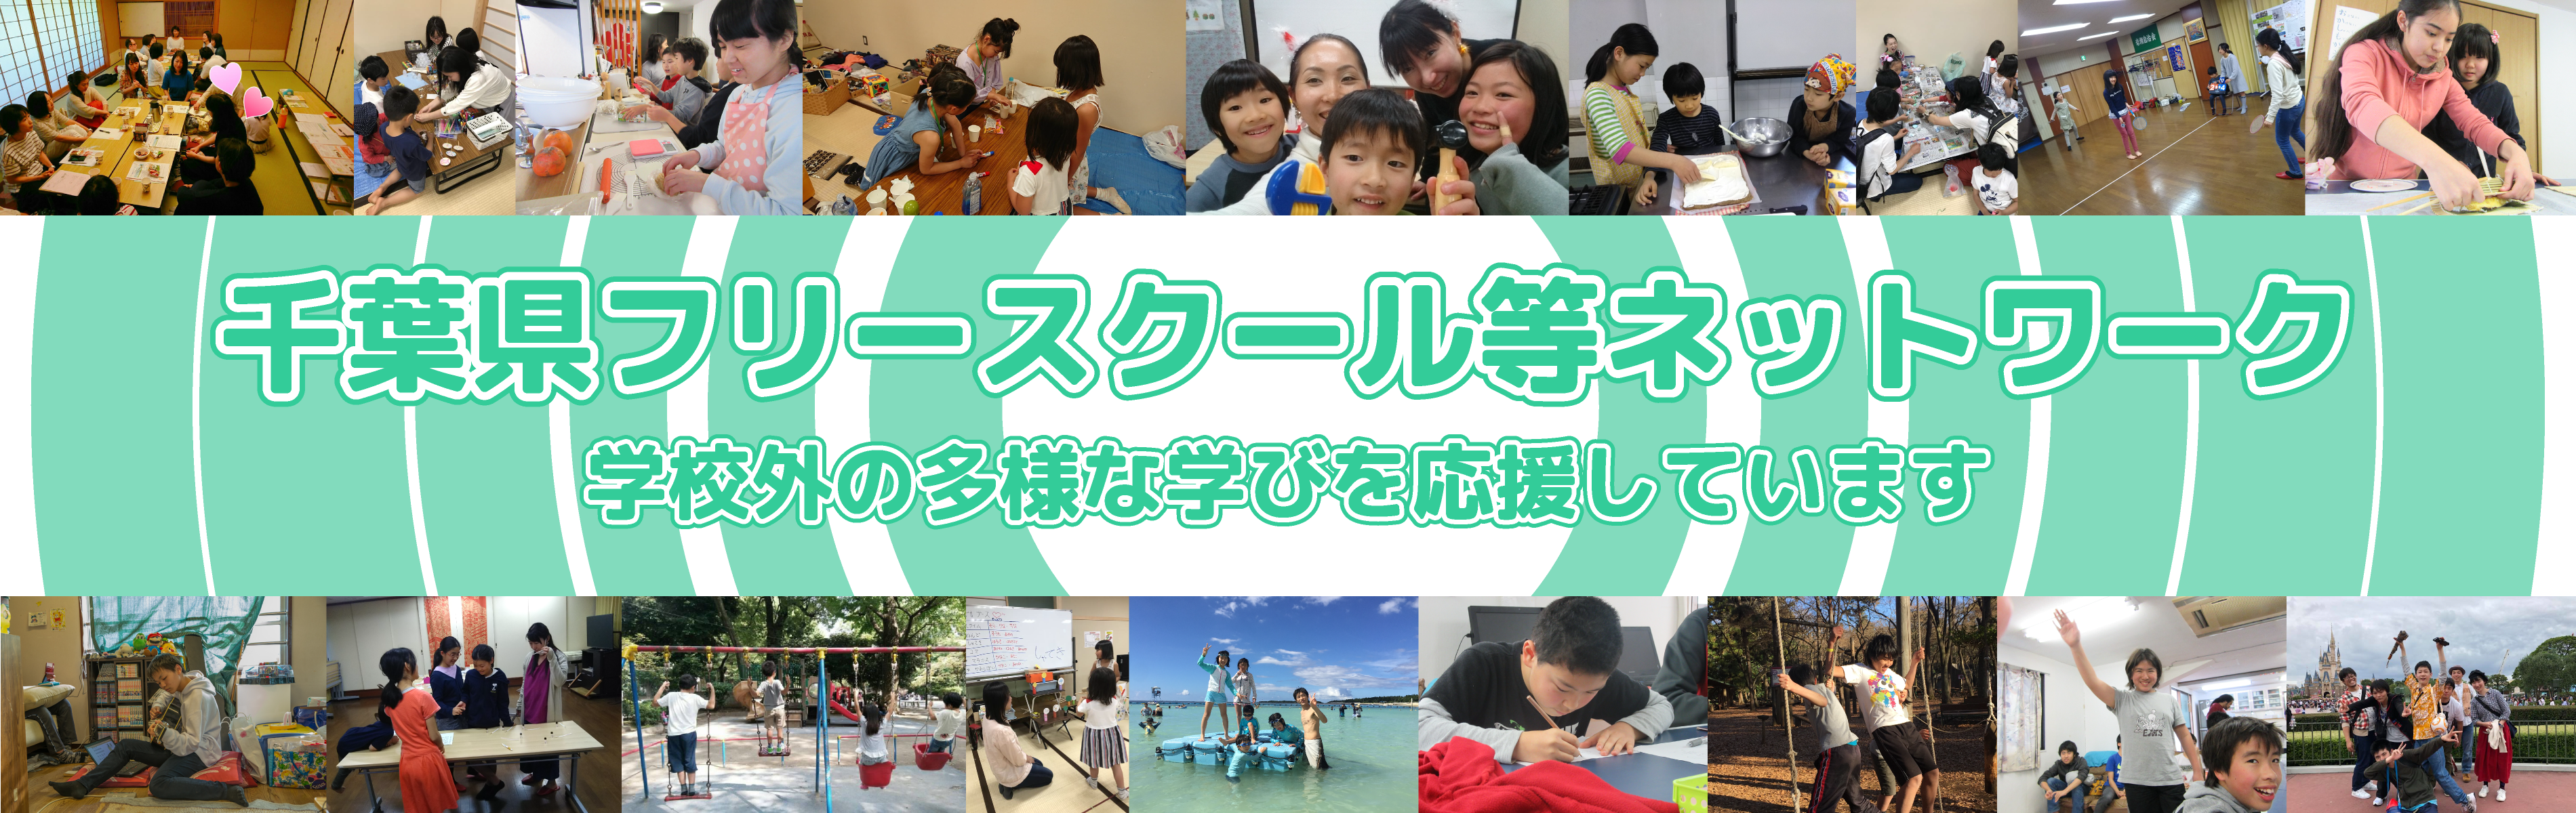 千葉県フリースクール等ネットワーク 学校外の多様な学びを応援しています